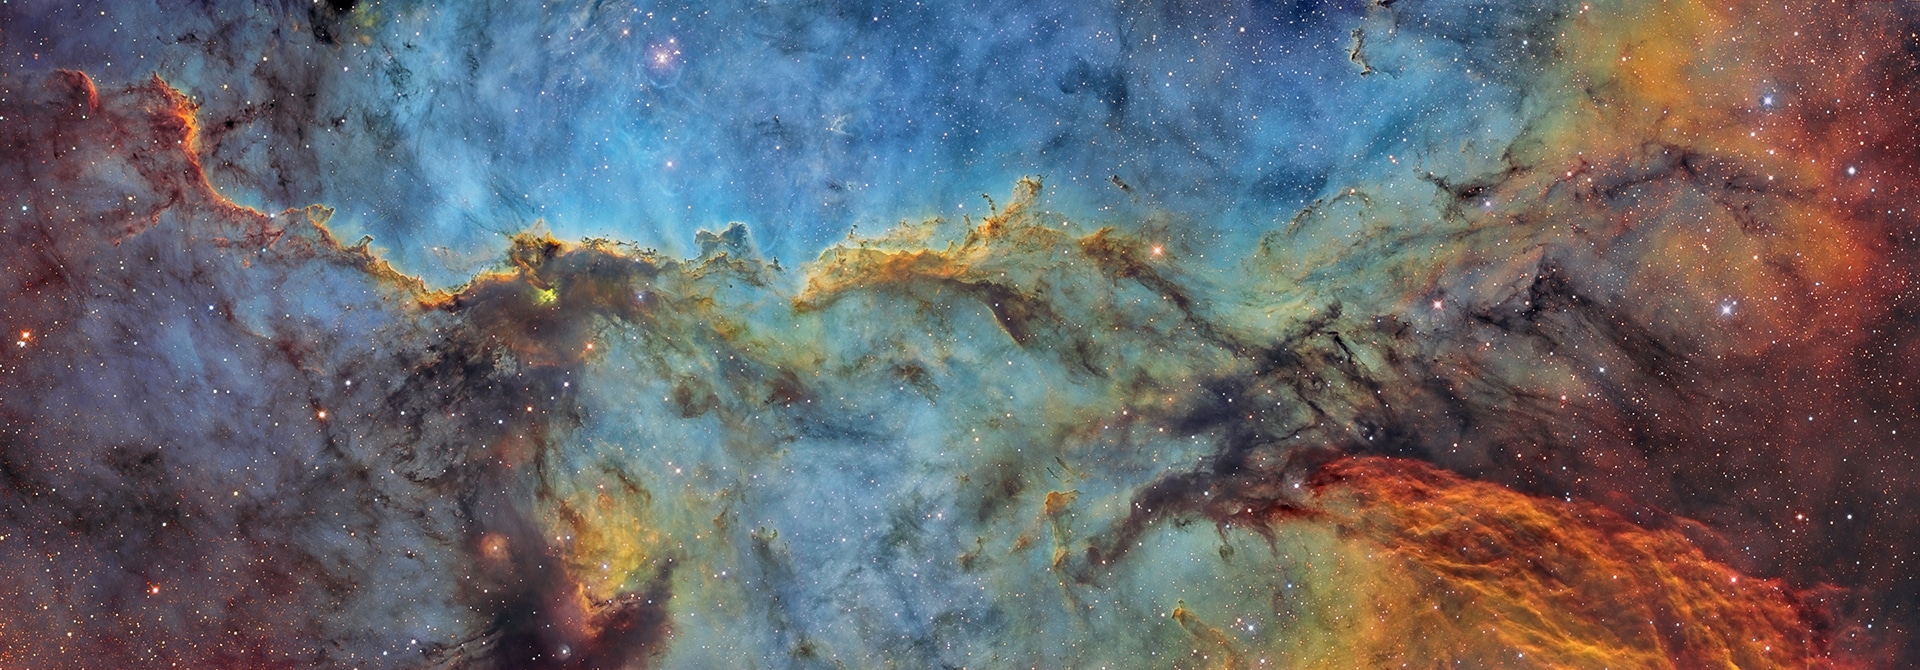 25 bức ảnh thiên văn về vẻ đẹp của thiên nhiên, vũ trụ và các vì sao